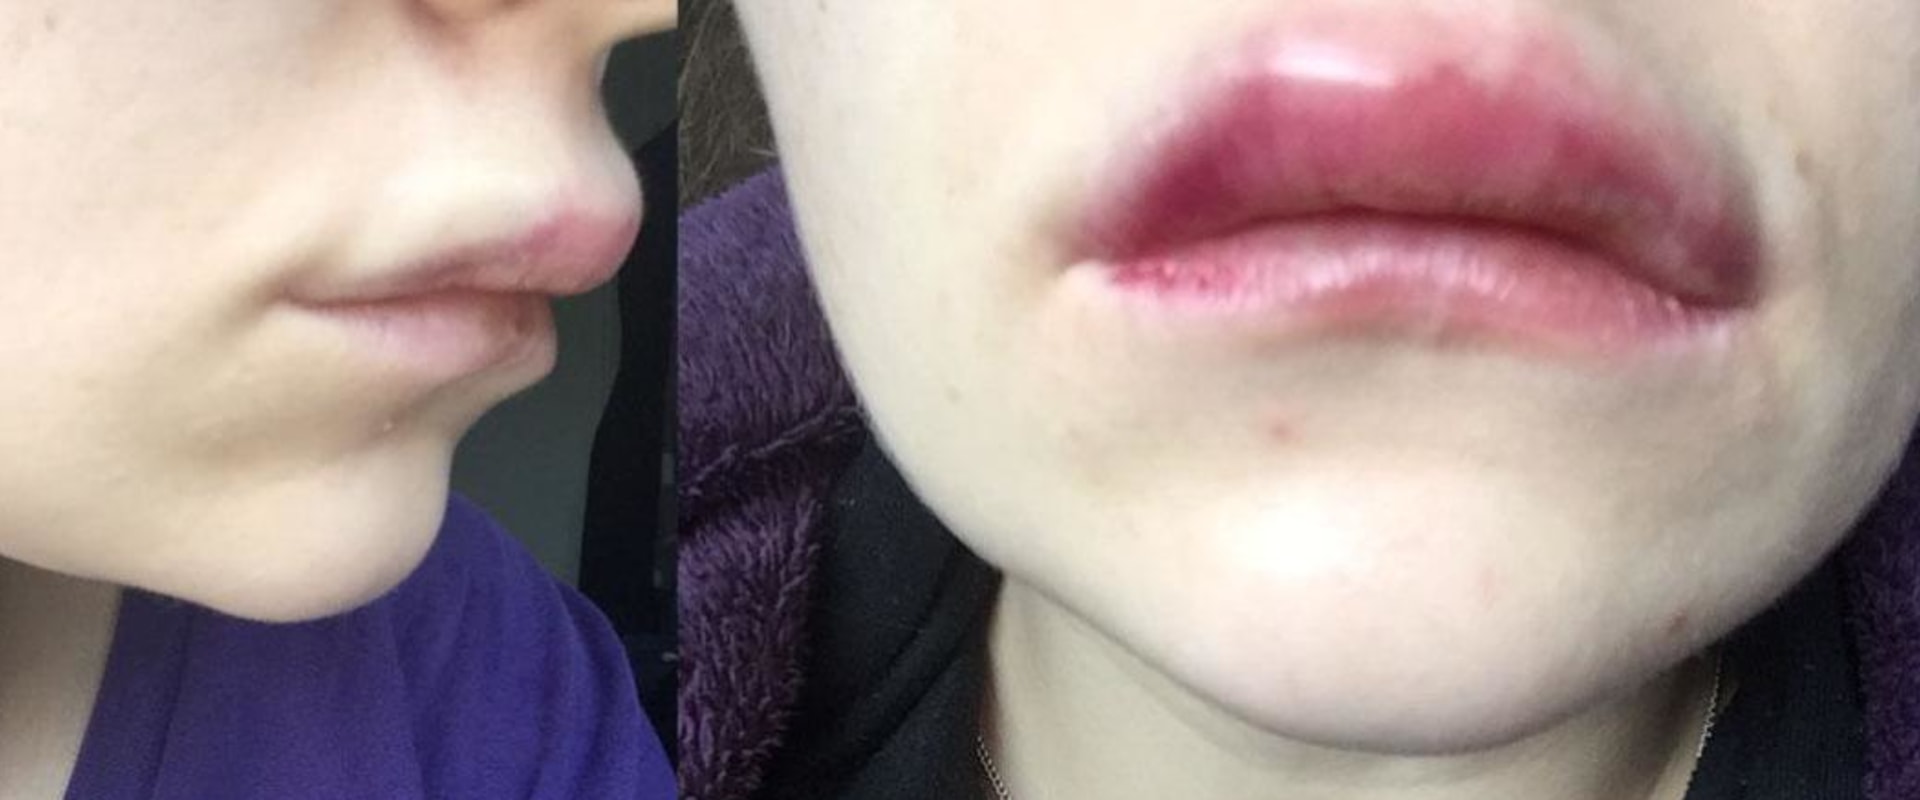 Cuánto dura la inflamación después de aumento de labios?